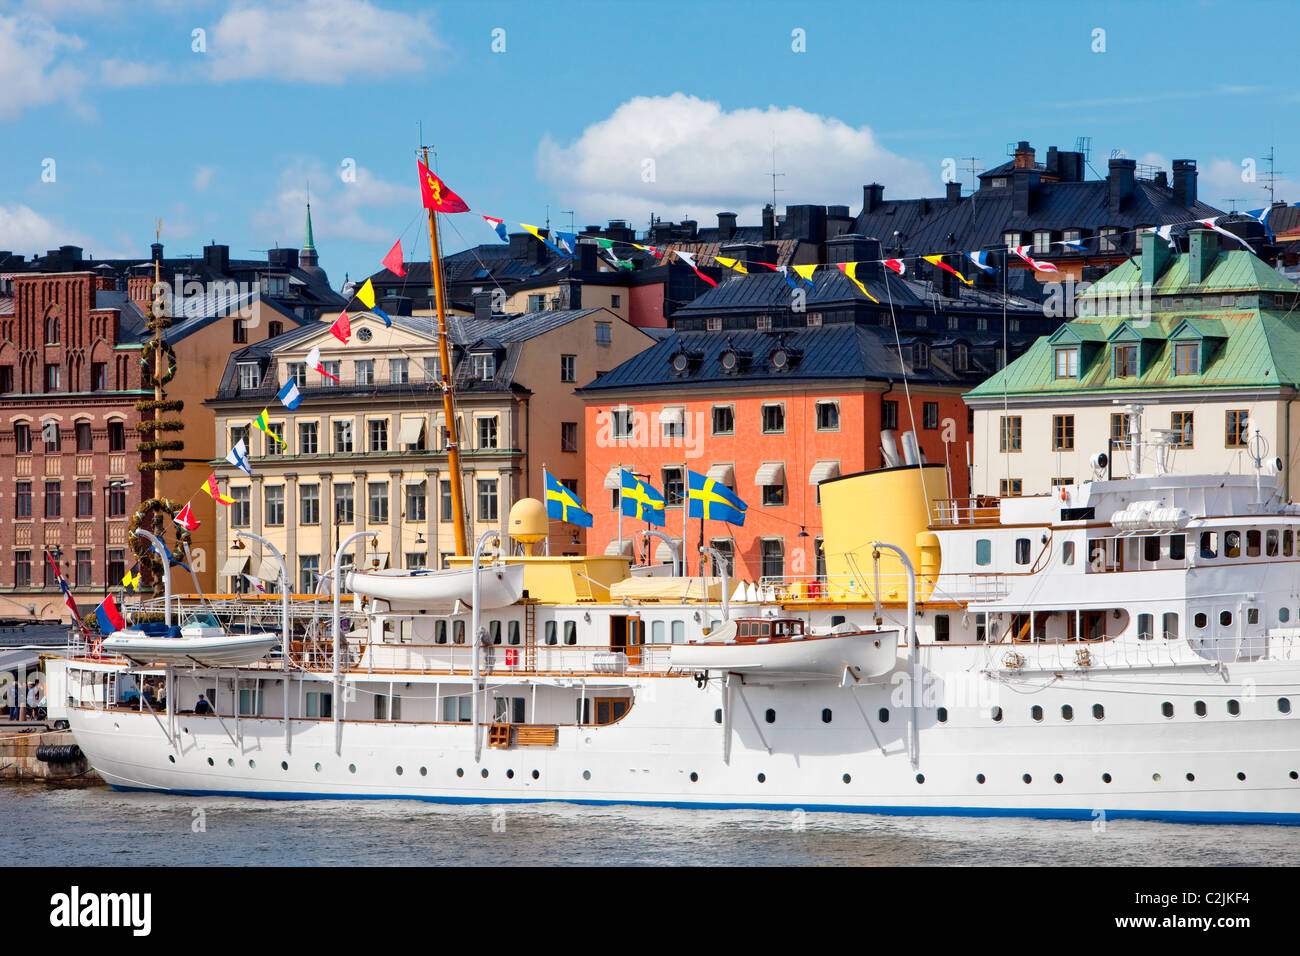 Schweden, Stockholm - Boote verankert in der Altstadt. Stockfoto